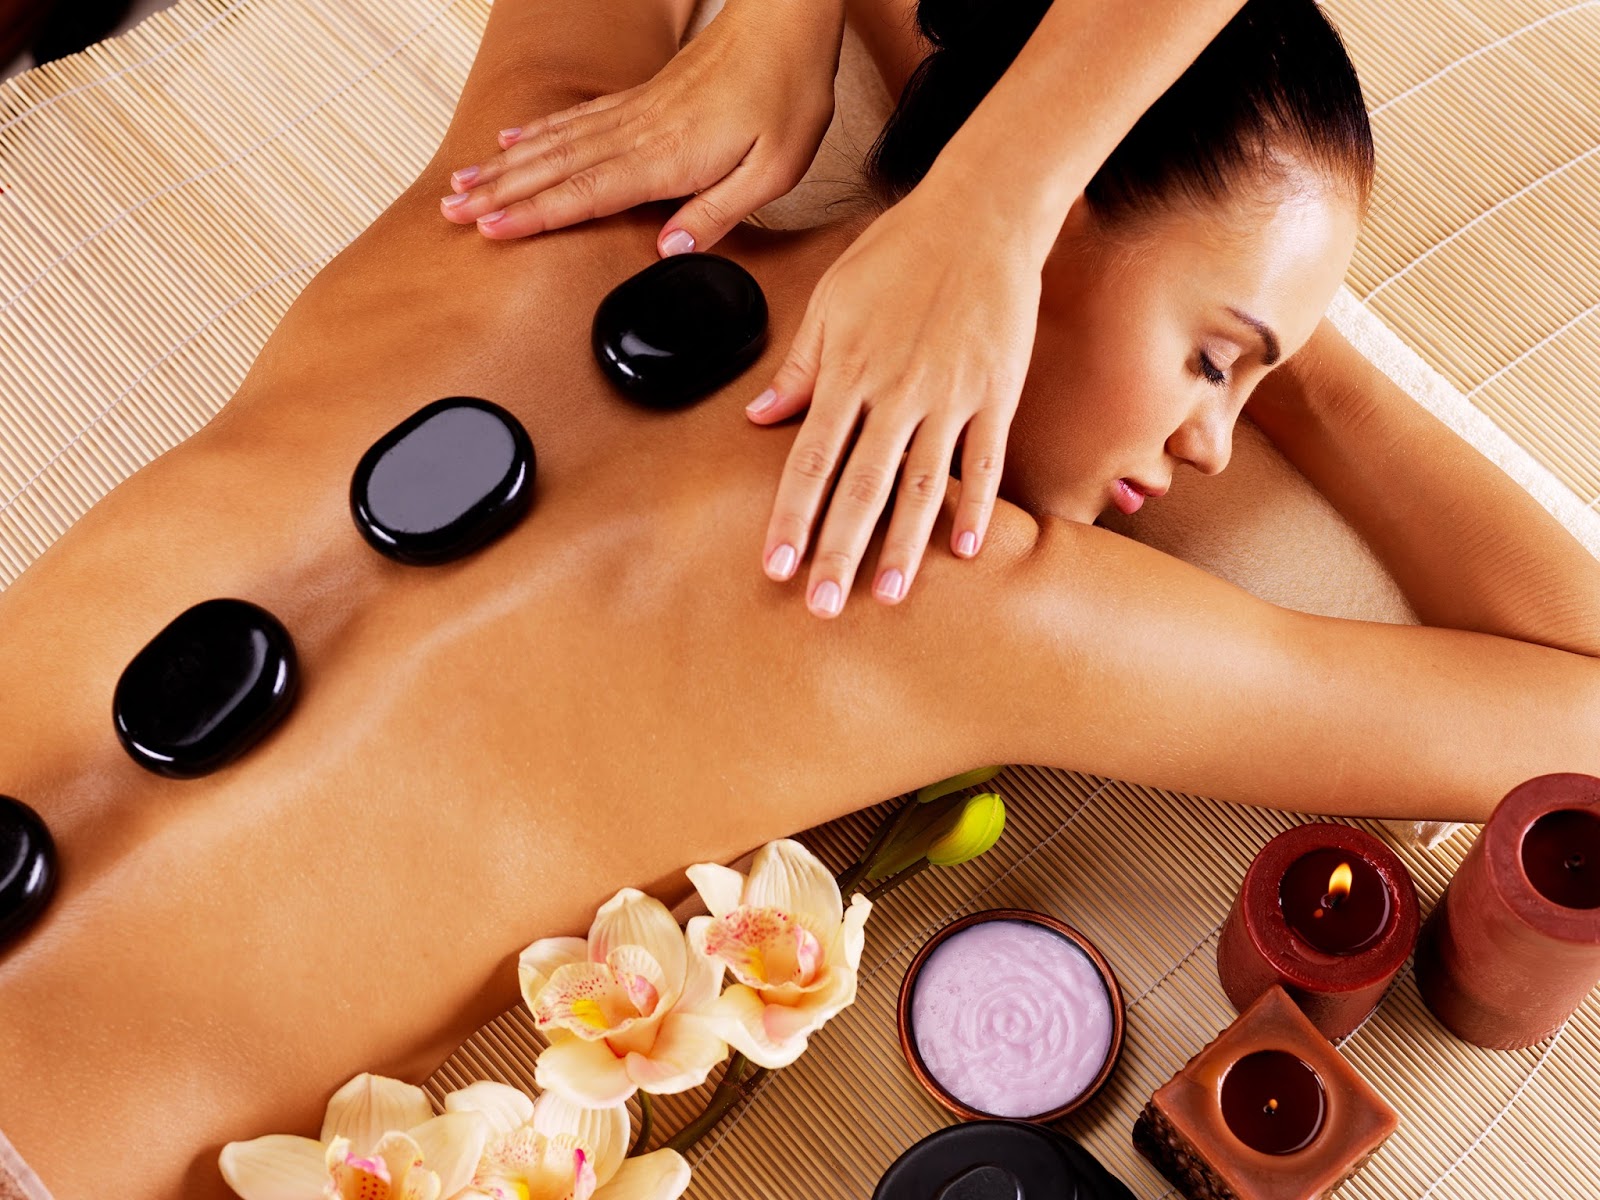 Hình 4 - Massage đá nóng là phương pháp trị liệu rất tốt cho sức khỏe và làm đẹp